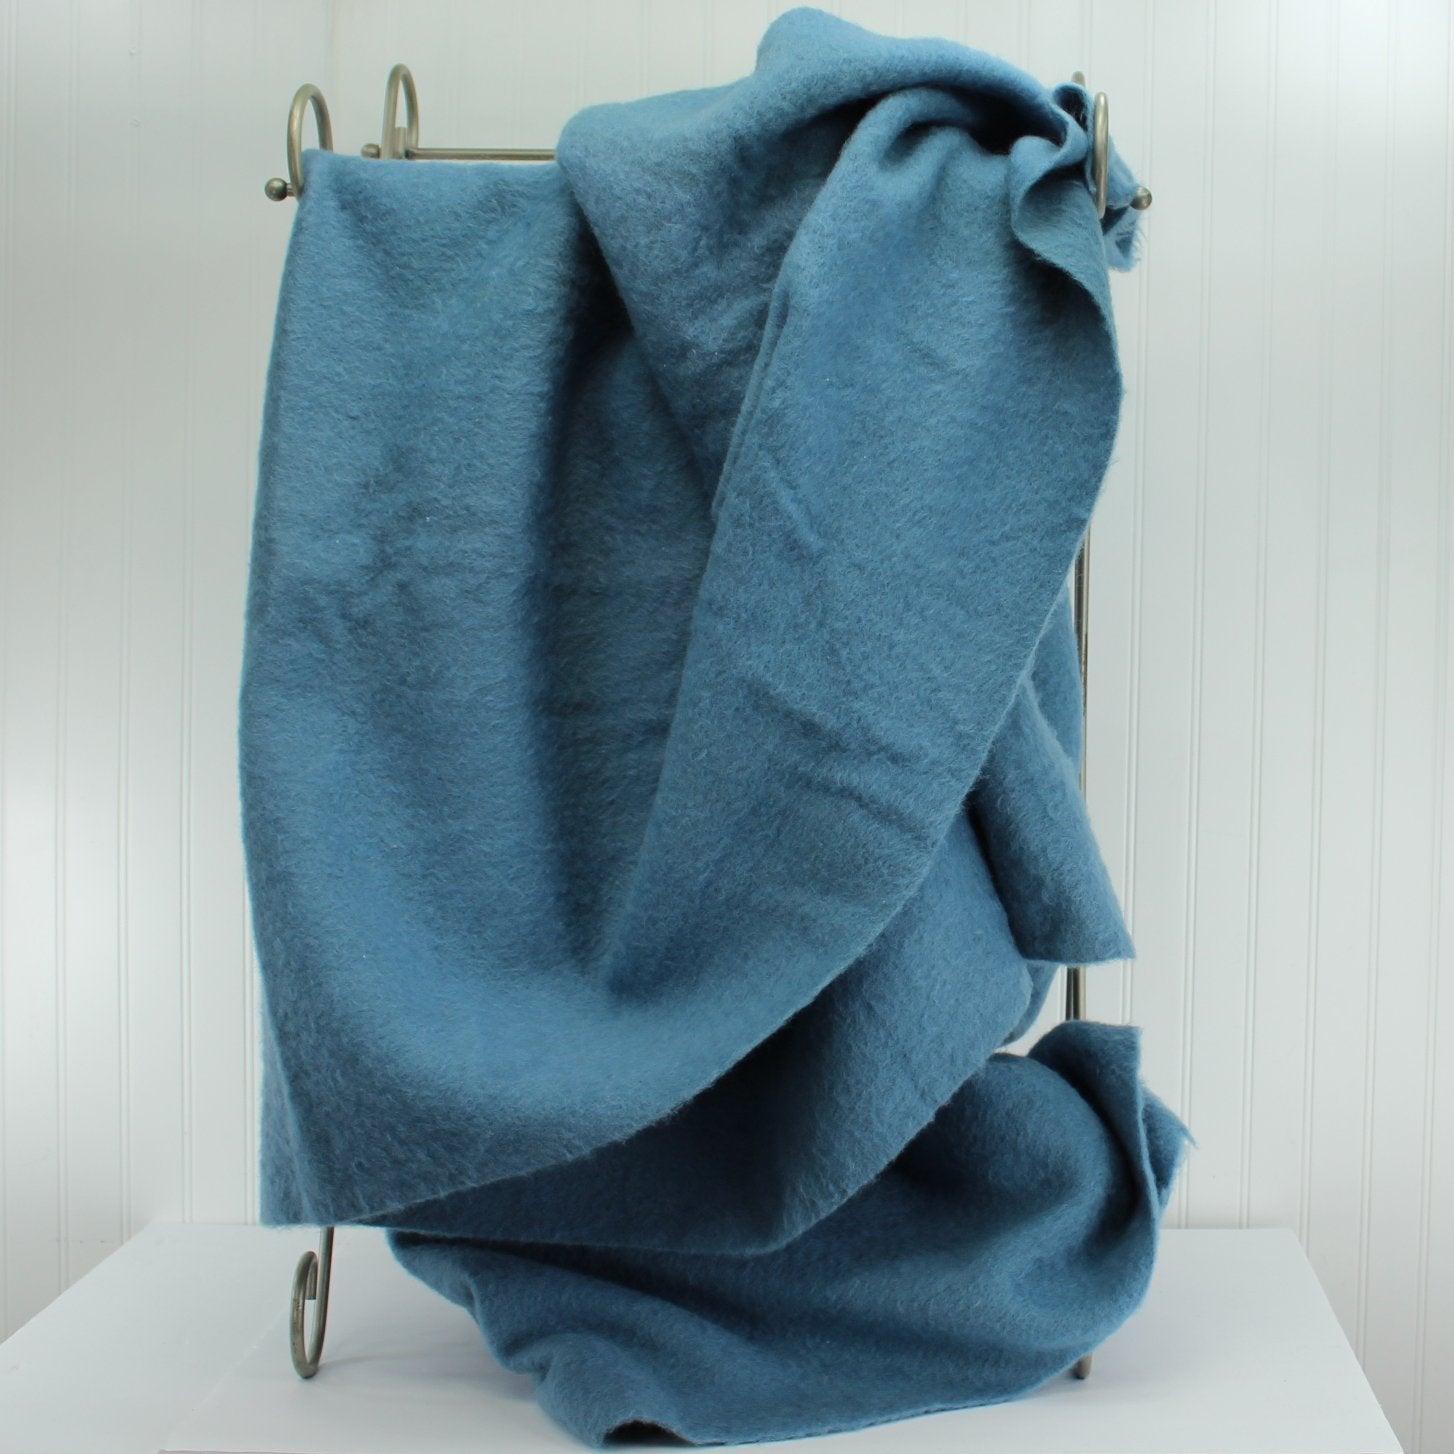 Hudson Bay Wool Blanket Blue Pastel Series 1930 1960 Excellent Estate very heavy blanket